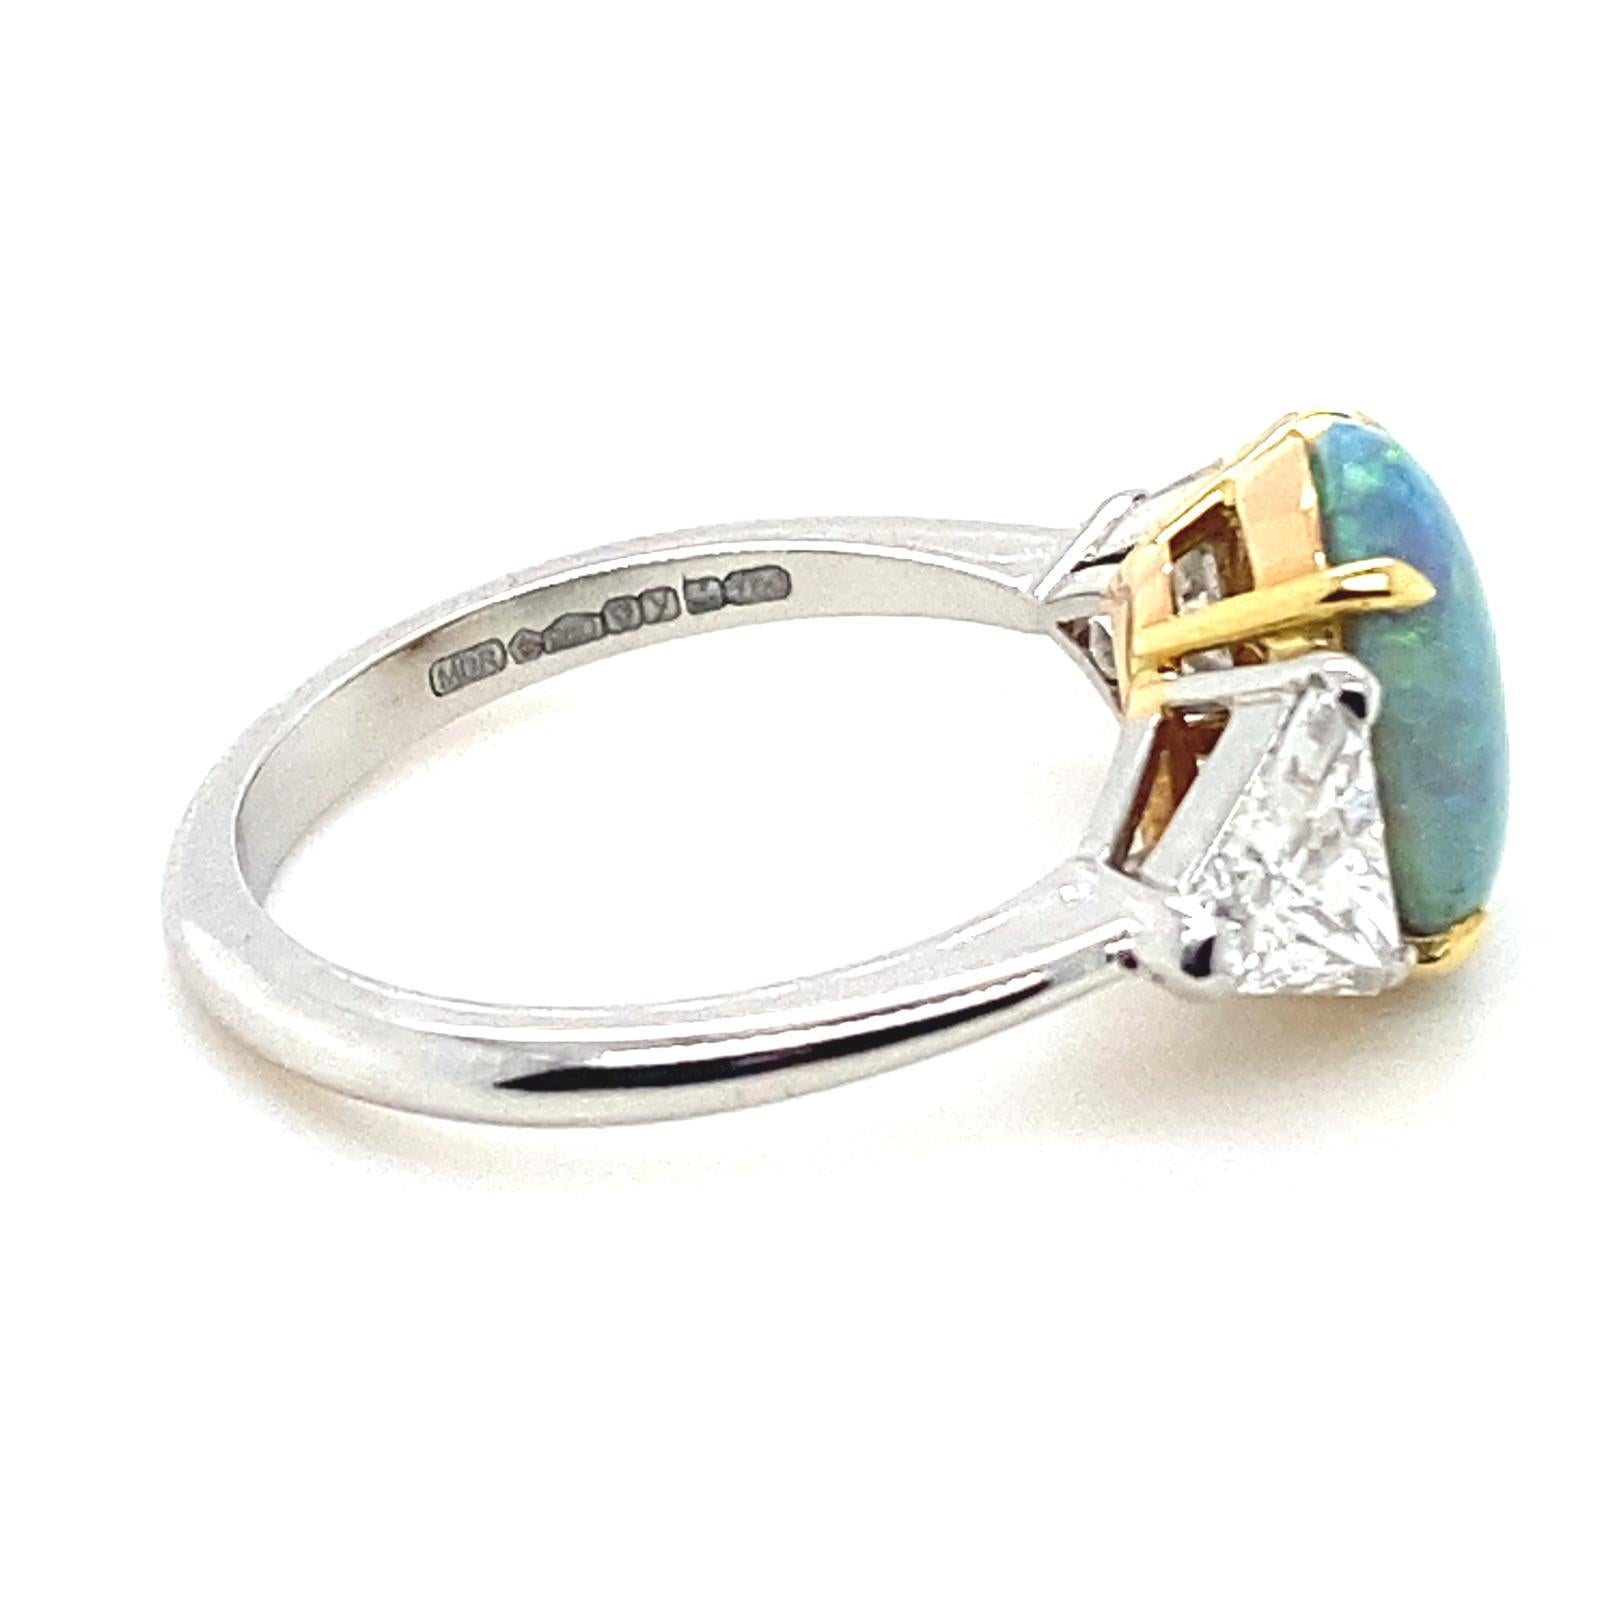 Ein Platinring mit Opal und Diamant

Dieser wunderschöne Ring mit Opal und Diamant ist handgefertigt aus Platin. In der Mitte des Schmuckstücks befindet sich ein runder Opal im Cabochon-Schliff von 1,93 Karat in kontrastierenden Gelbgoldspangen.
